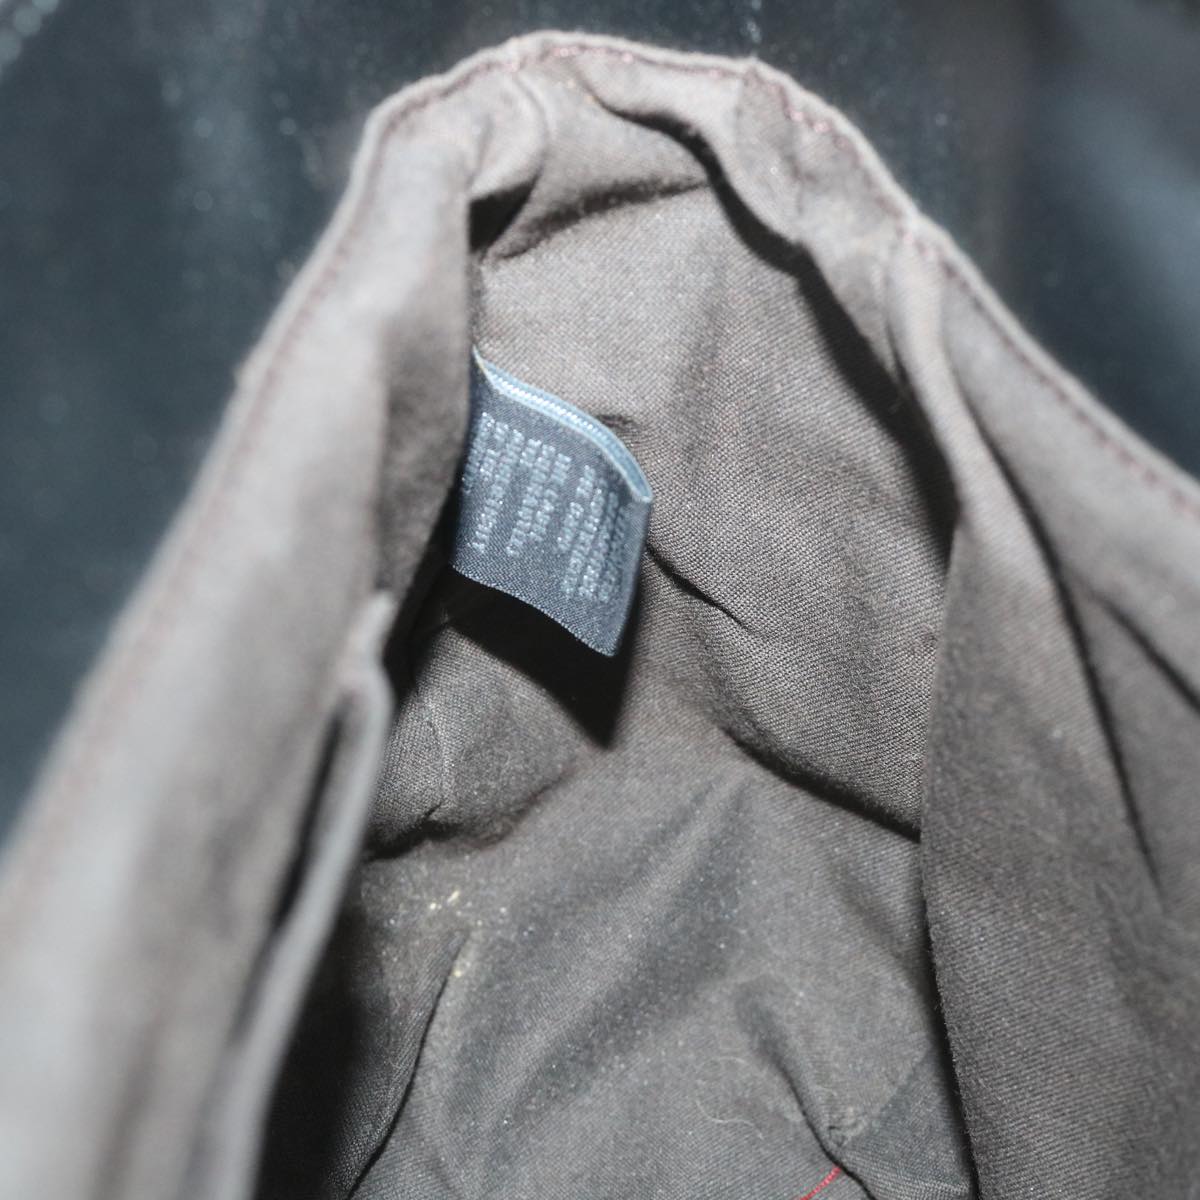 FENDI Shoulder Bag Cotton Beige Black Auth 56685